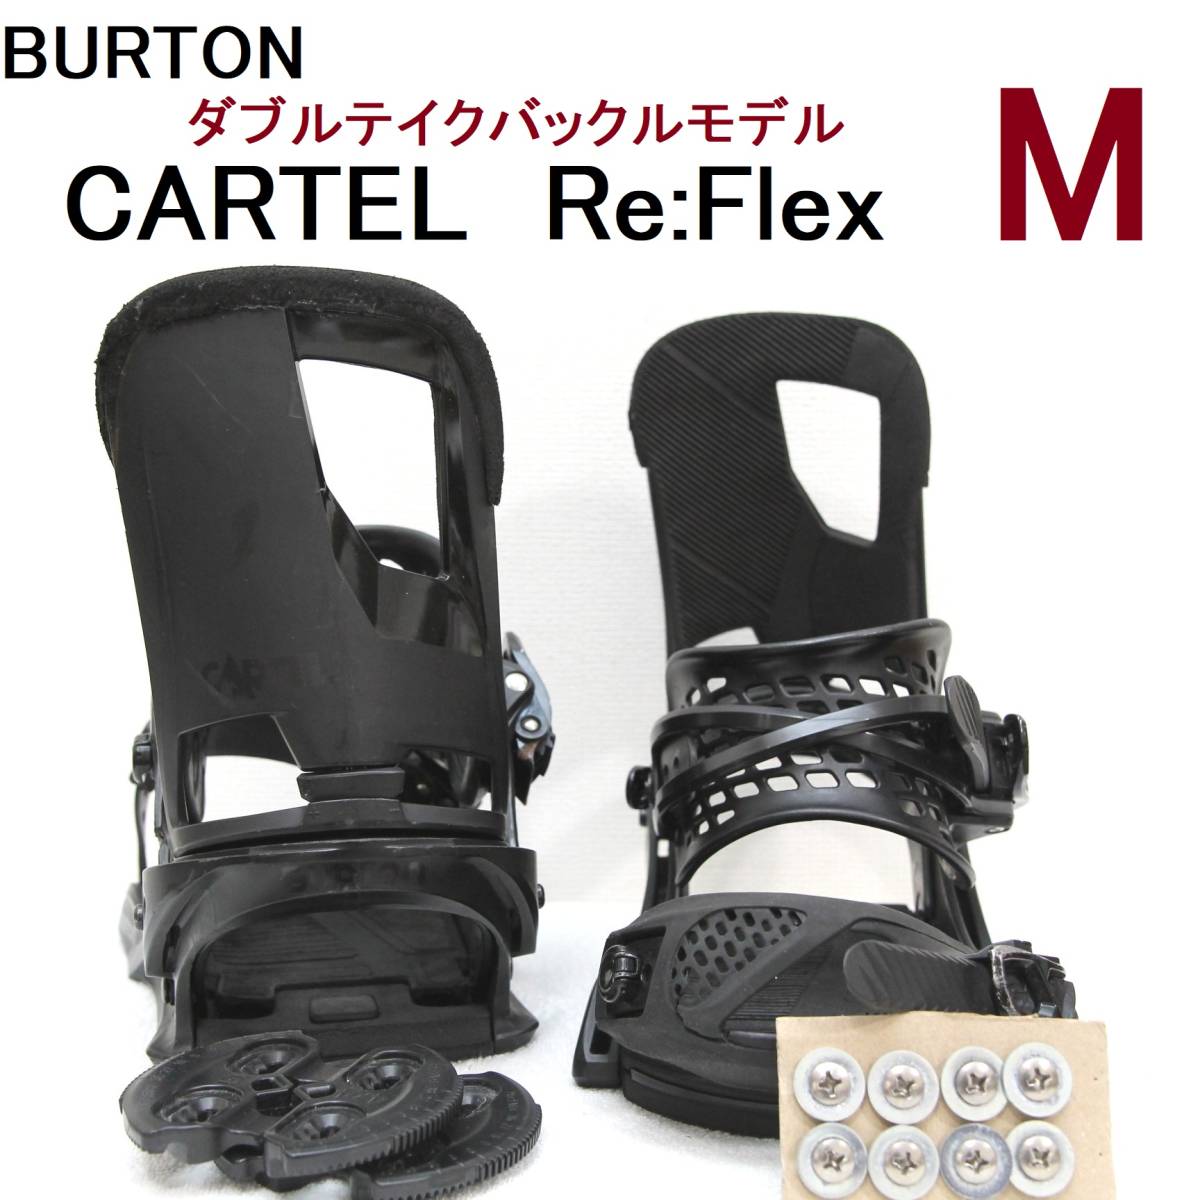 M】CARTEL カーテルDT バートン BURTON Re:Flex リフレックス 4×4